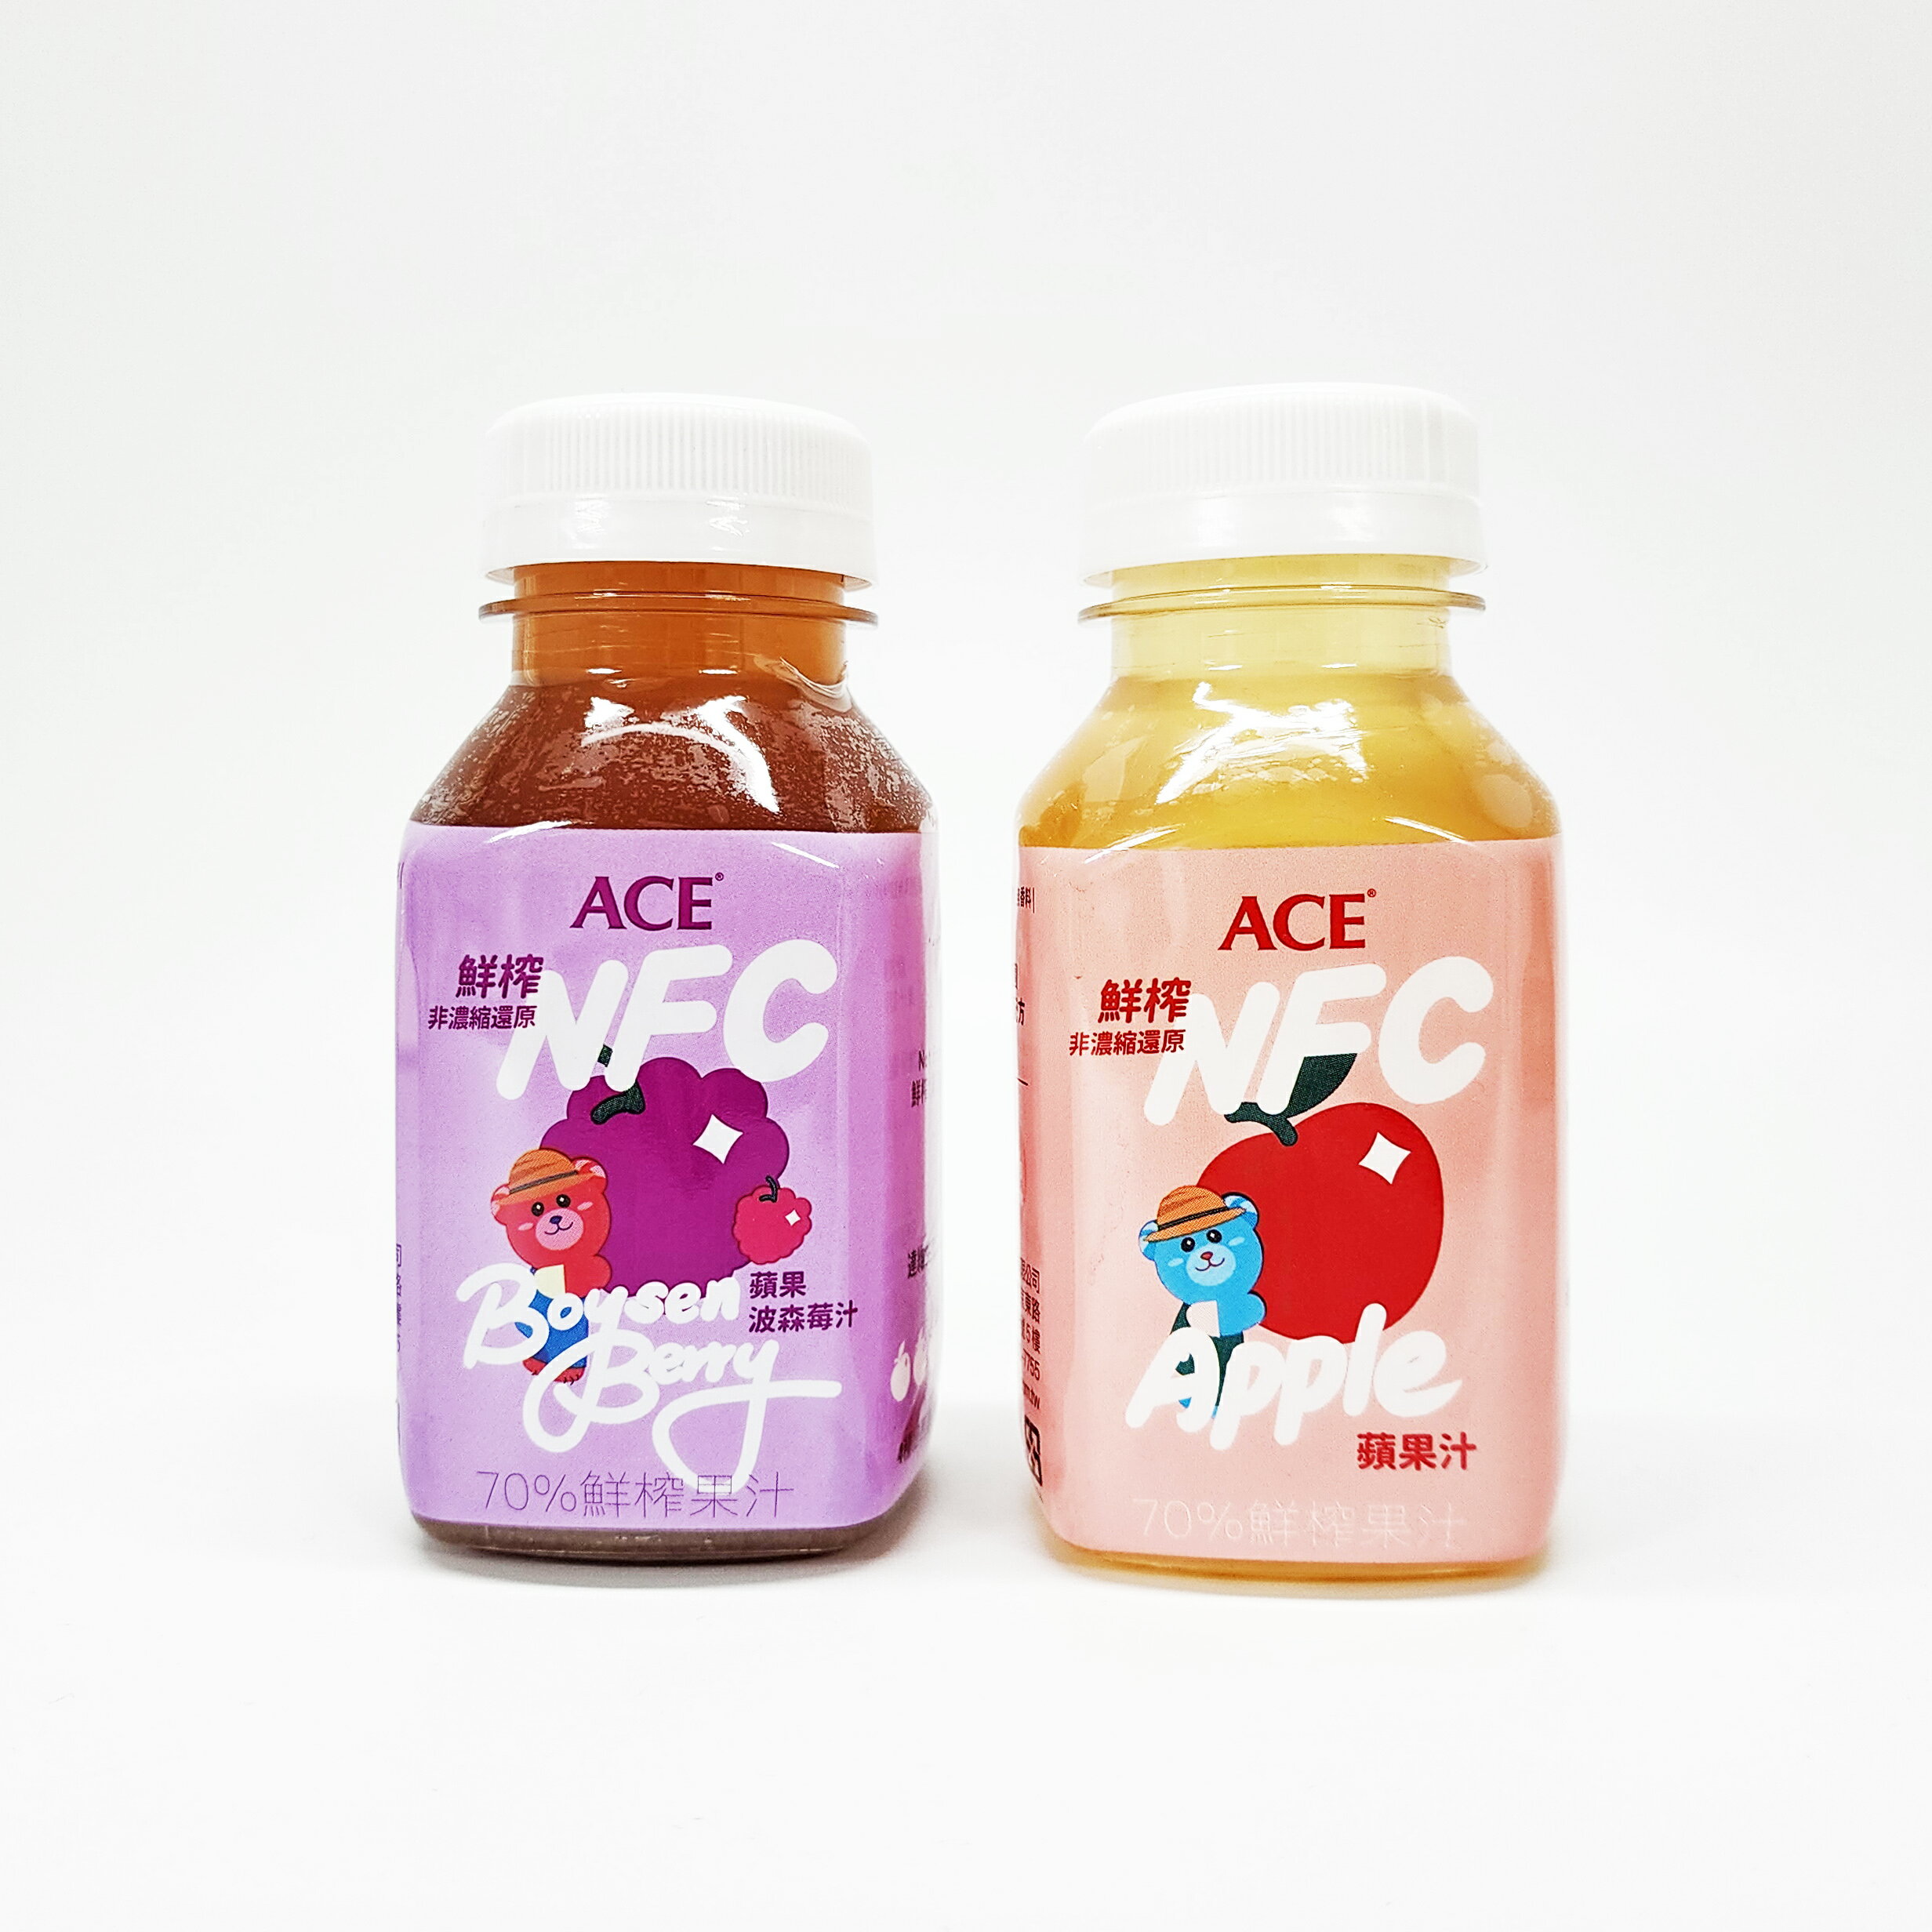 ACE 鮮榨 NFC Juice 蘋果口味/蘋果波森莓